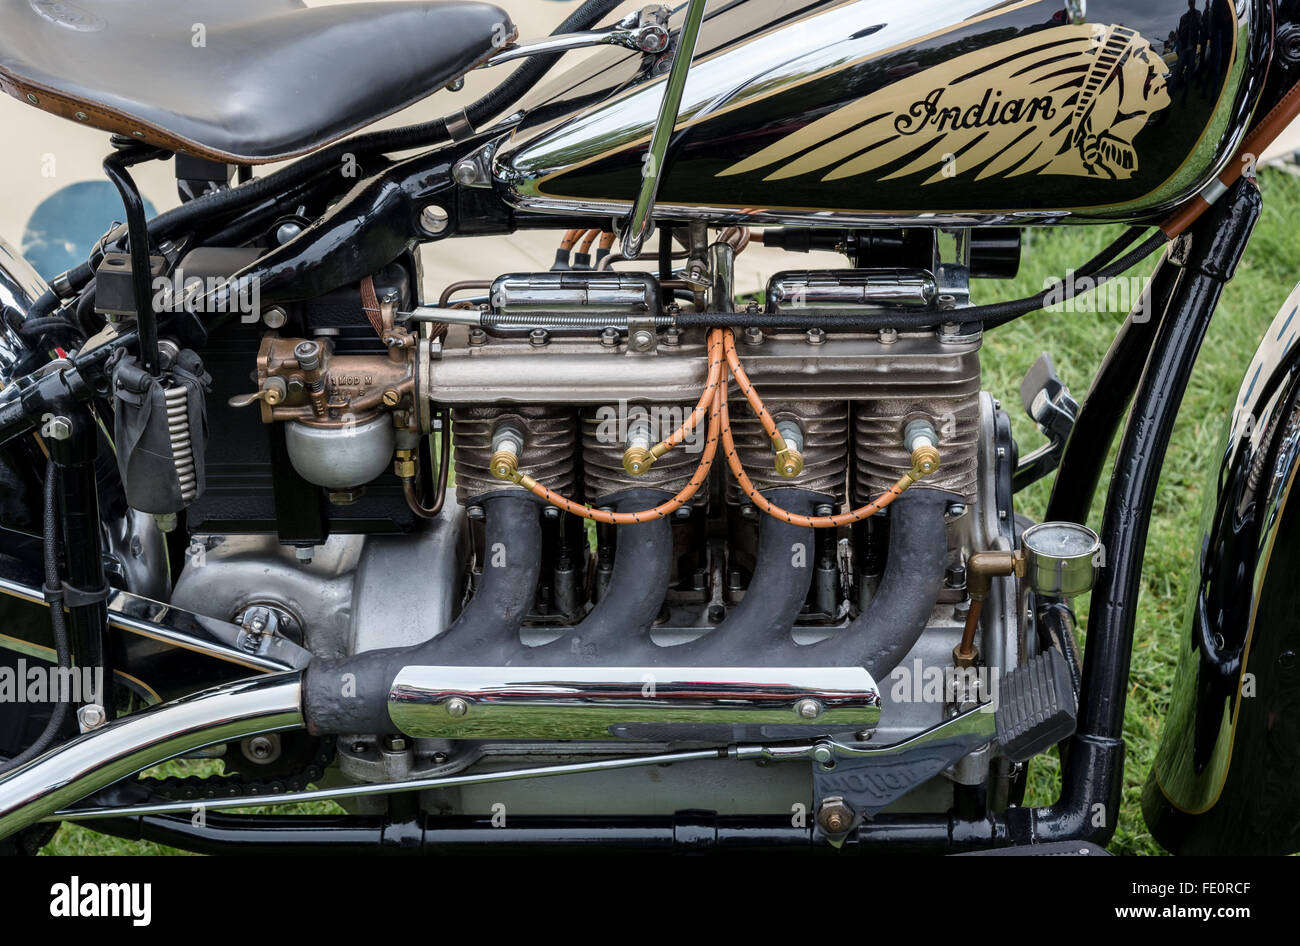 Dettaglio di vintage 'indiano' motociclo Foto Stock